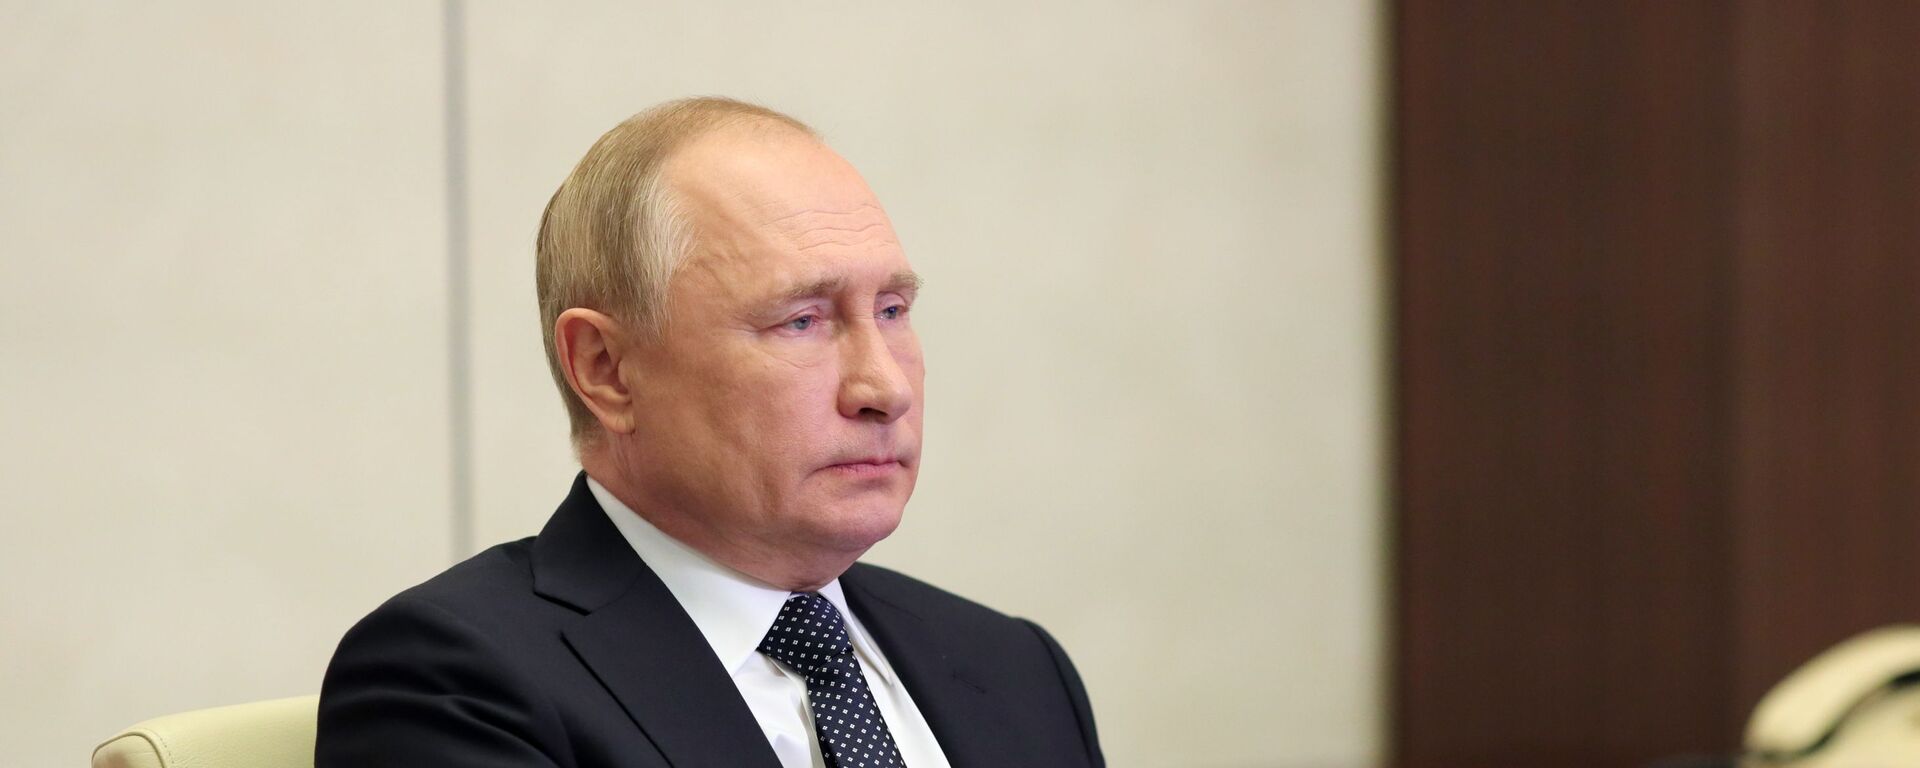 الرئيس الروسي فلاديمير بوتين خلال مشاركته في مؤتمر قمة مجموعة العشرين، روسيا 31 أكتوبر 2021 - سبوتنيك عربي, 1920, 30.11.2021